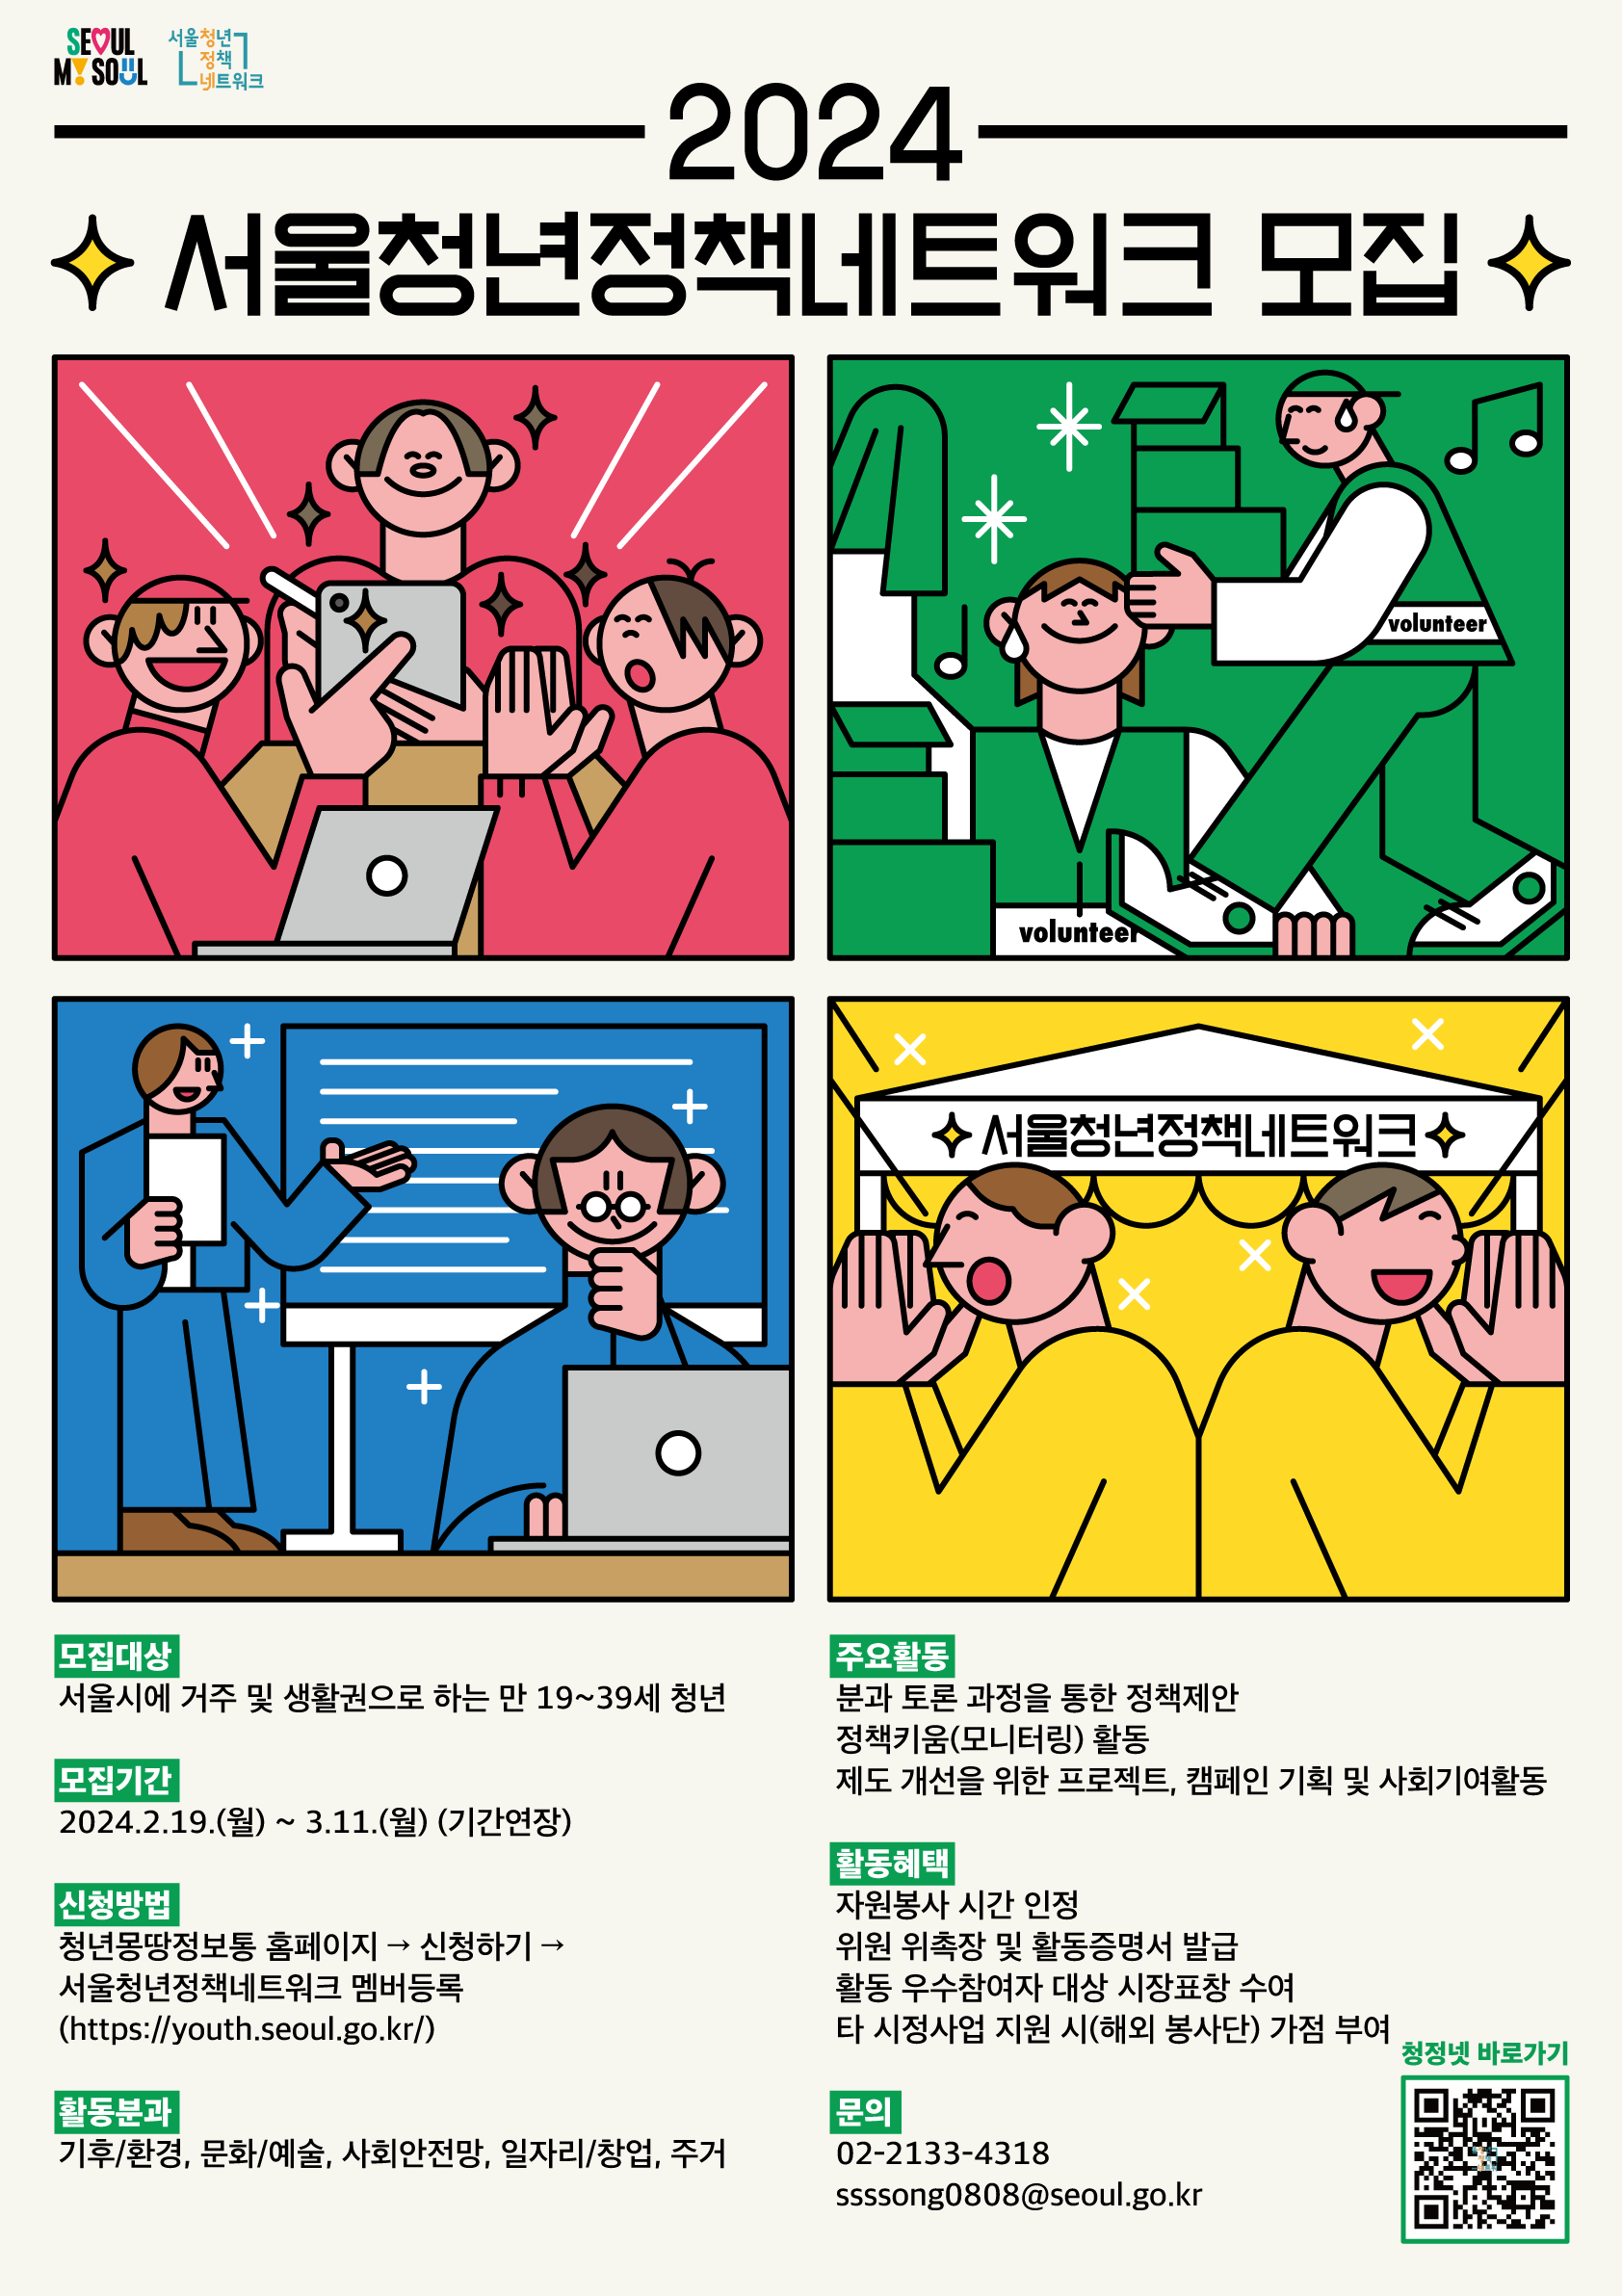 서울시 청년참여기구 ‘서울청년정책네트워크’에서 올해 활동할 청년 500명을 모집한다.